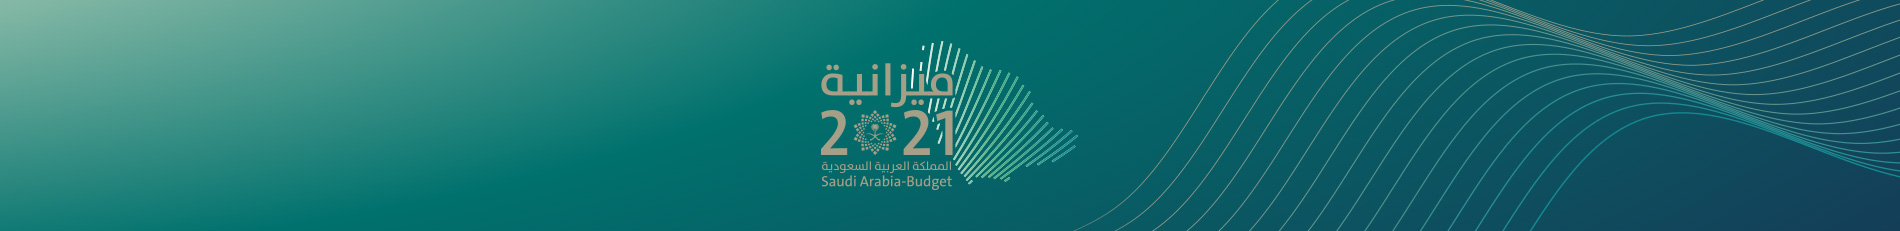 الميزانية العامة لعام 2021